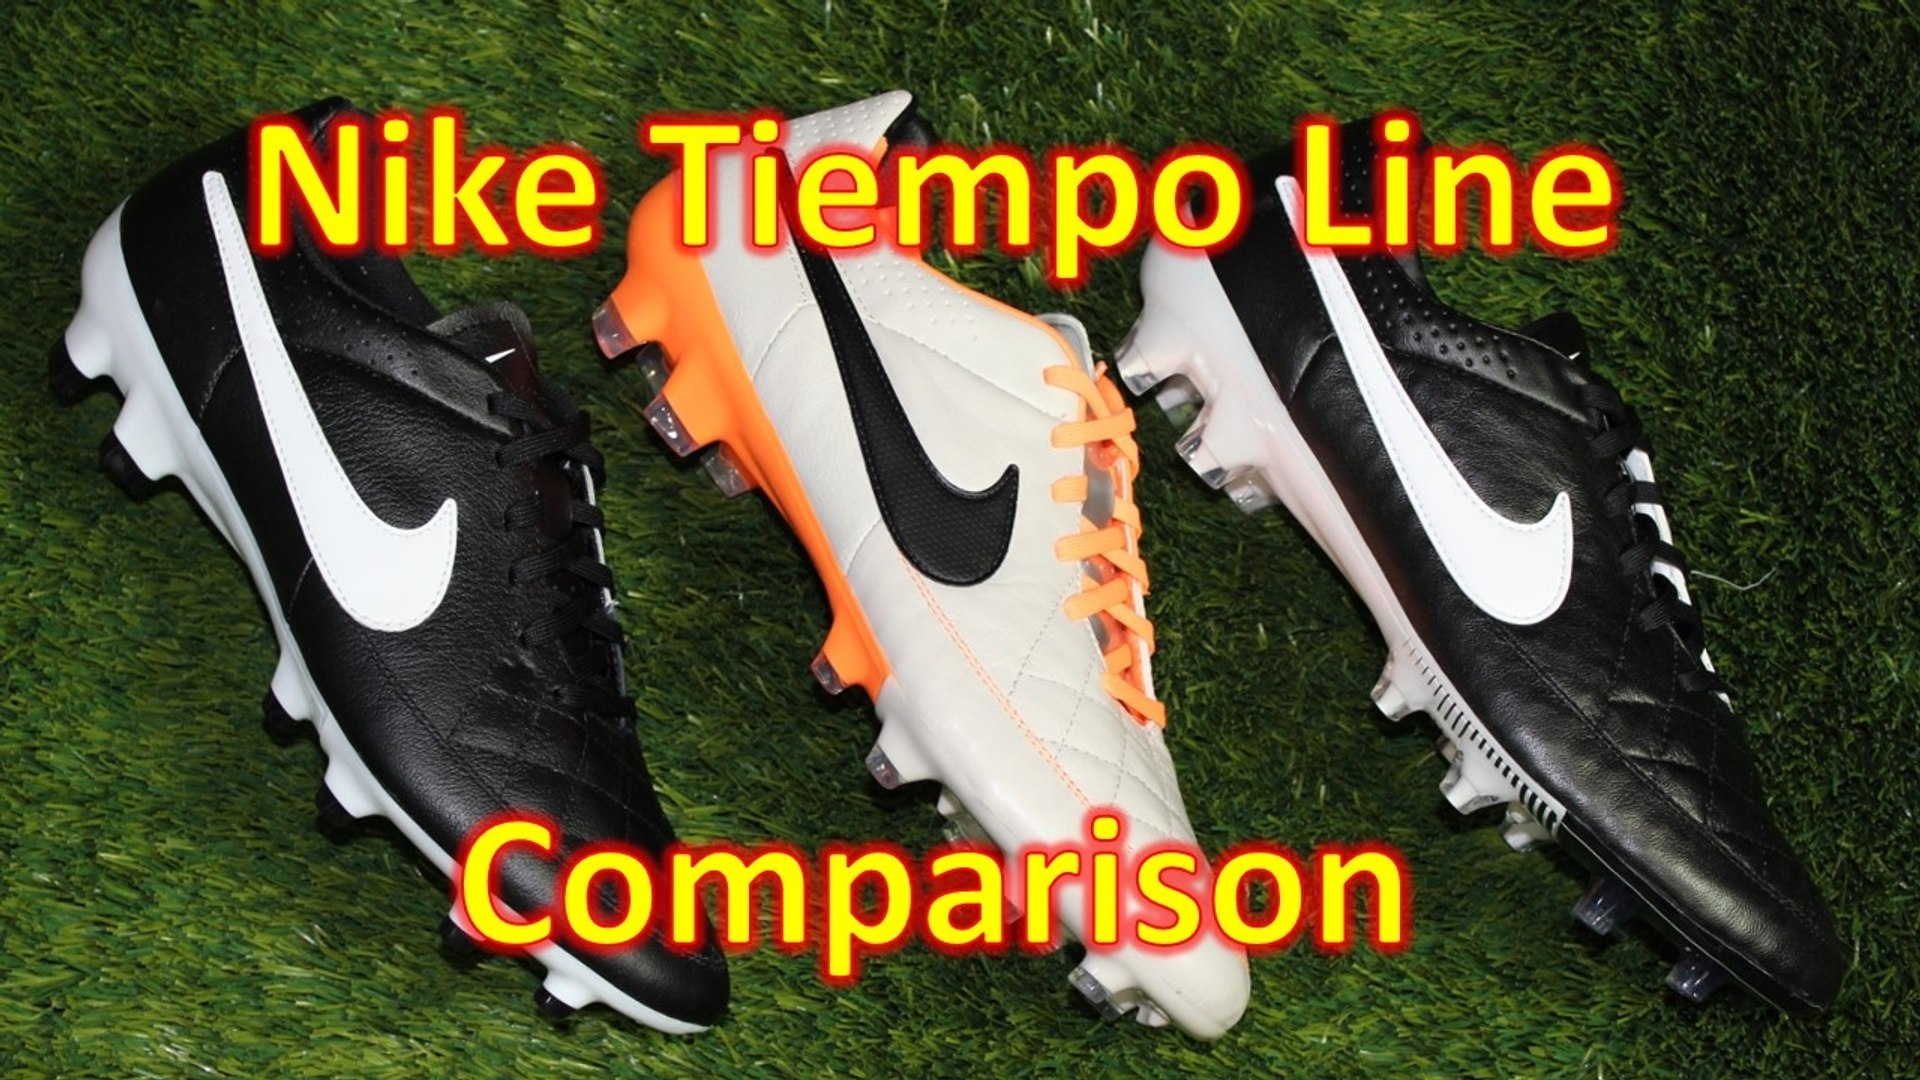 Nike Tiempo Line Comparison - Legend 5 Vs Legacy Vs Genio - video  Dailymotion